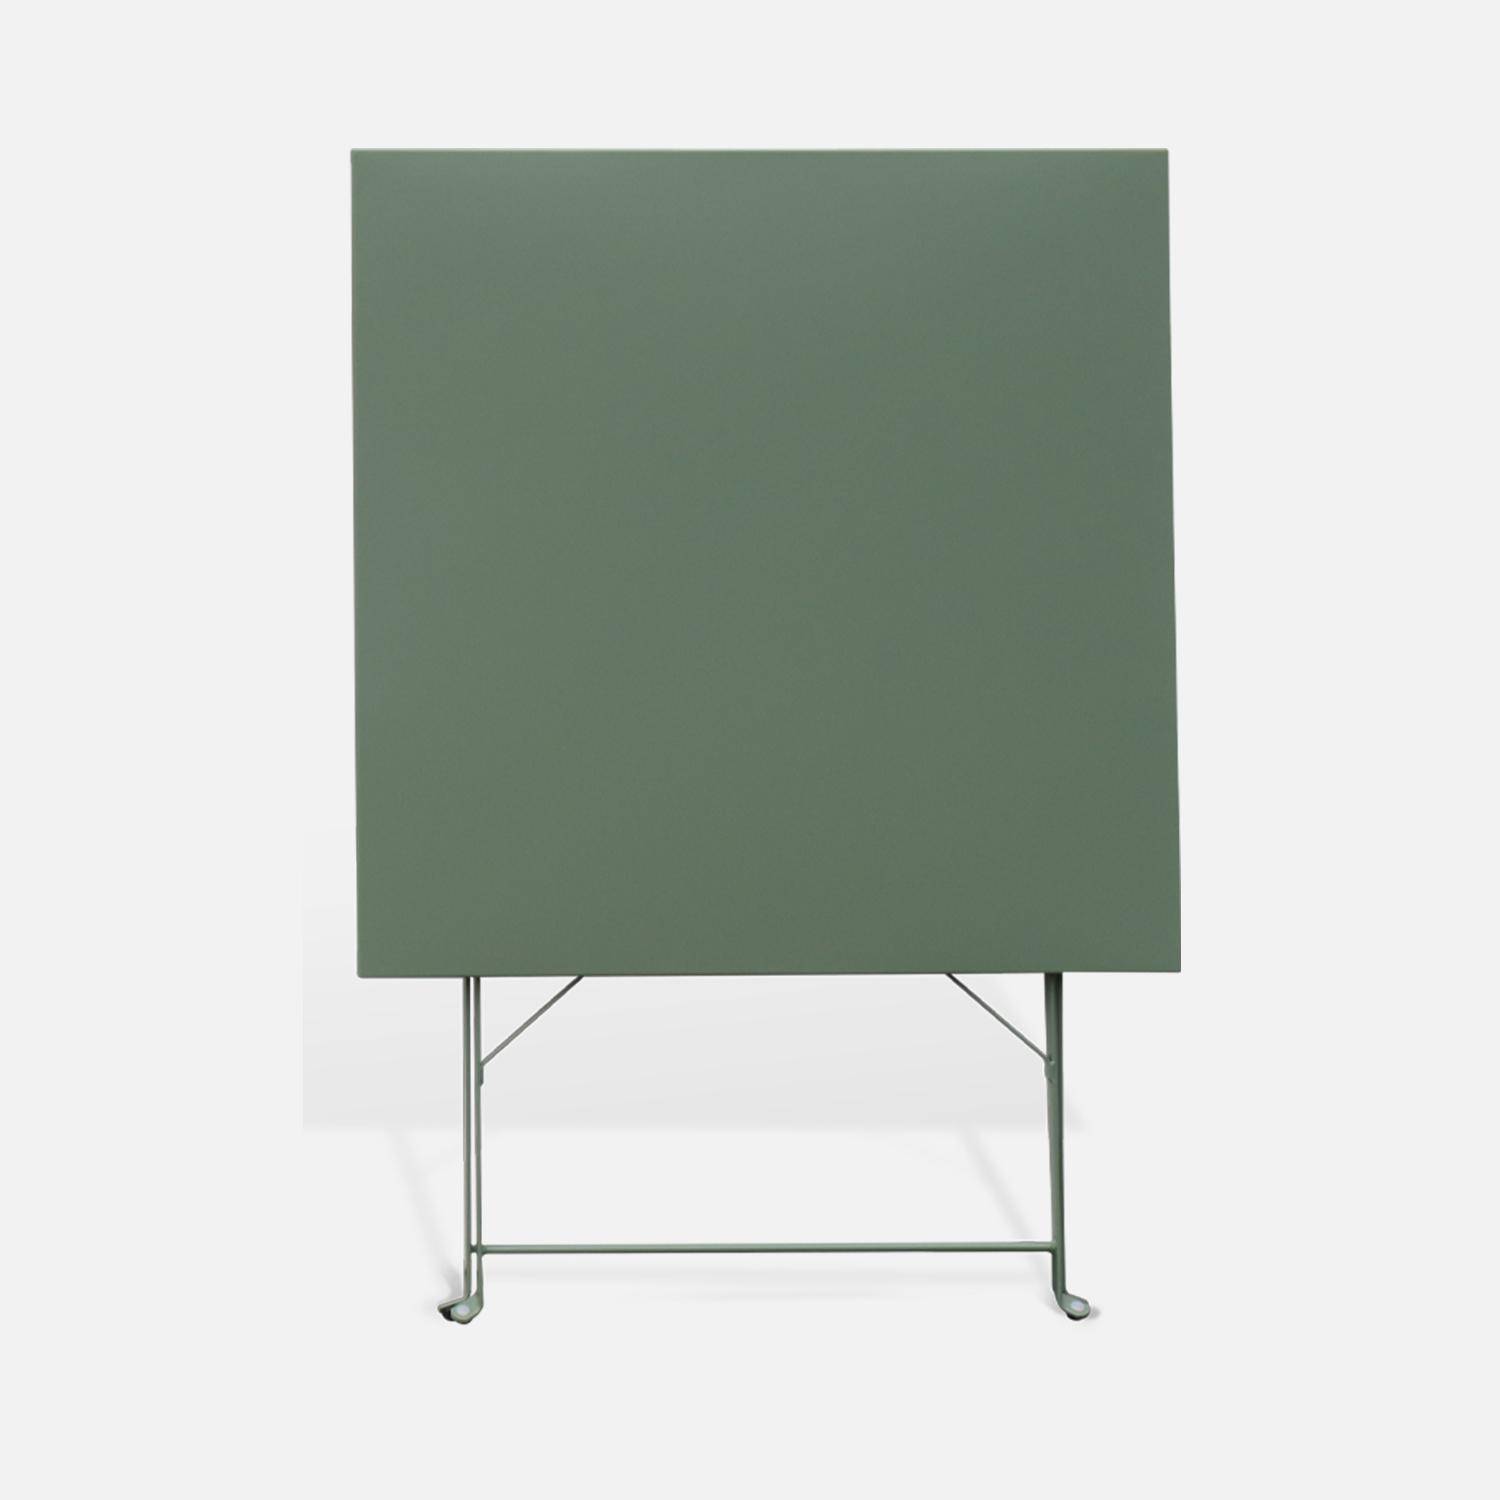 Klappbarer Bistro-Gartentisch - Emilia quadratisch Graugrün - Quadratischer Tisch 70x70cm aus pulverbeschichtetem Stahl Photo2